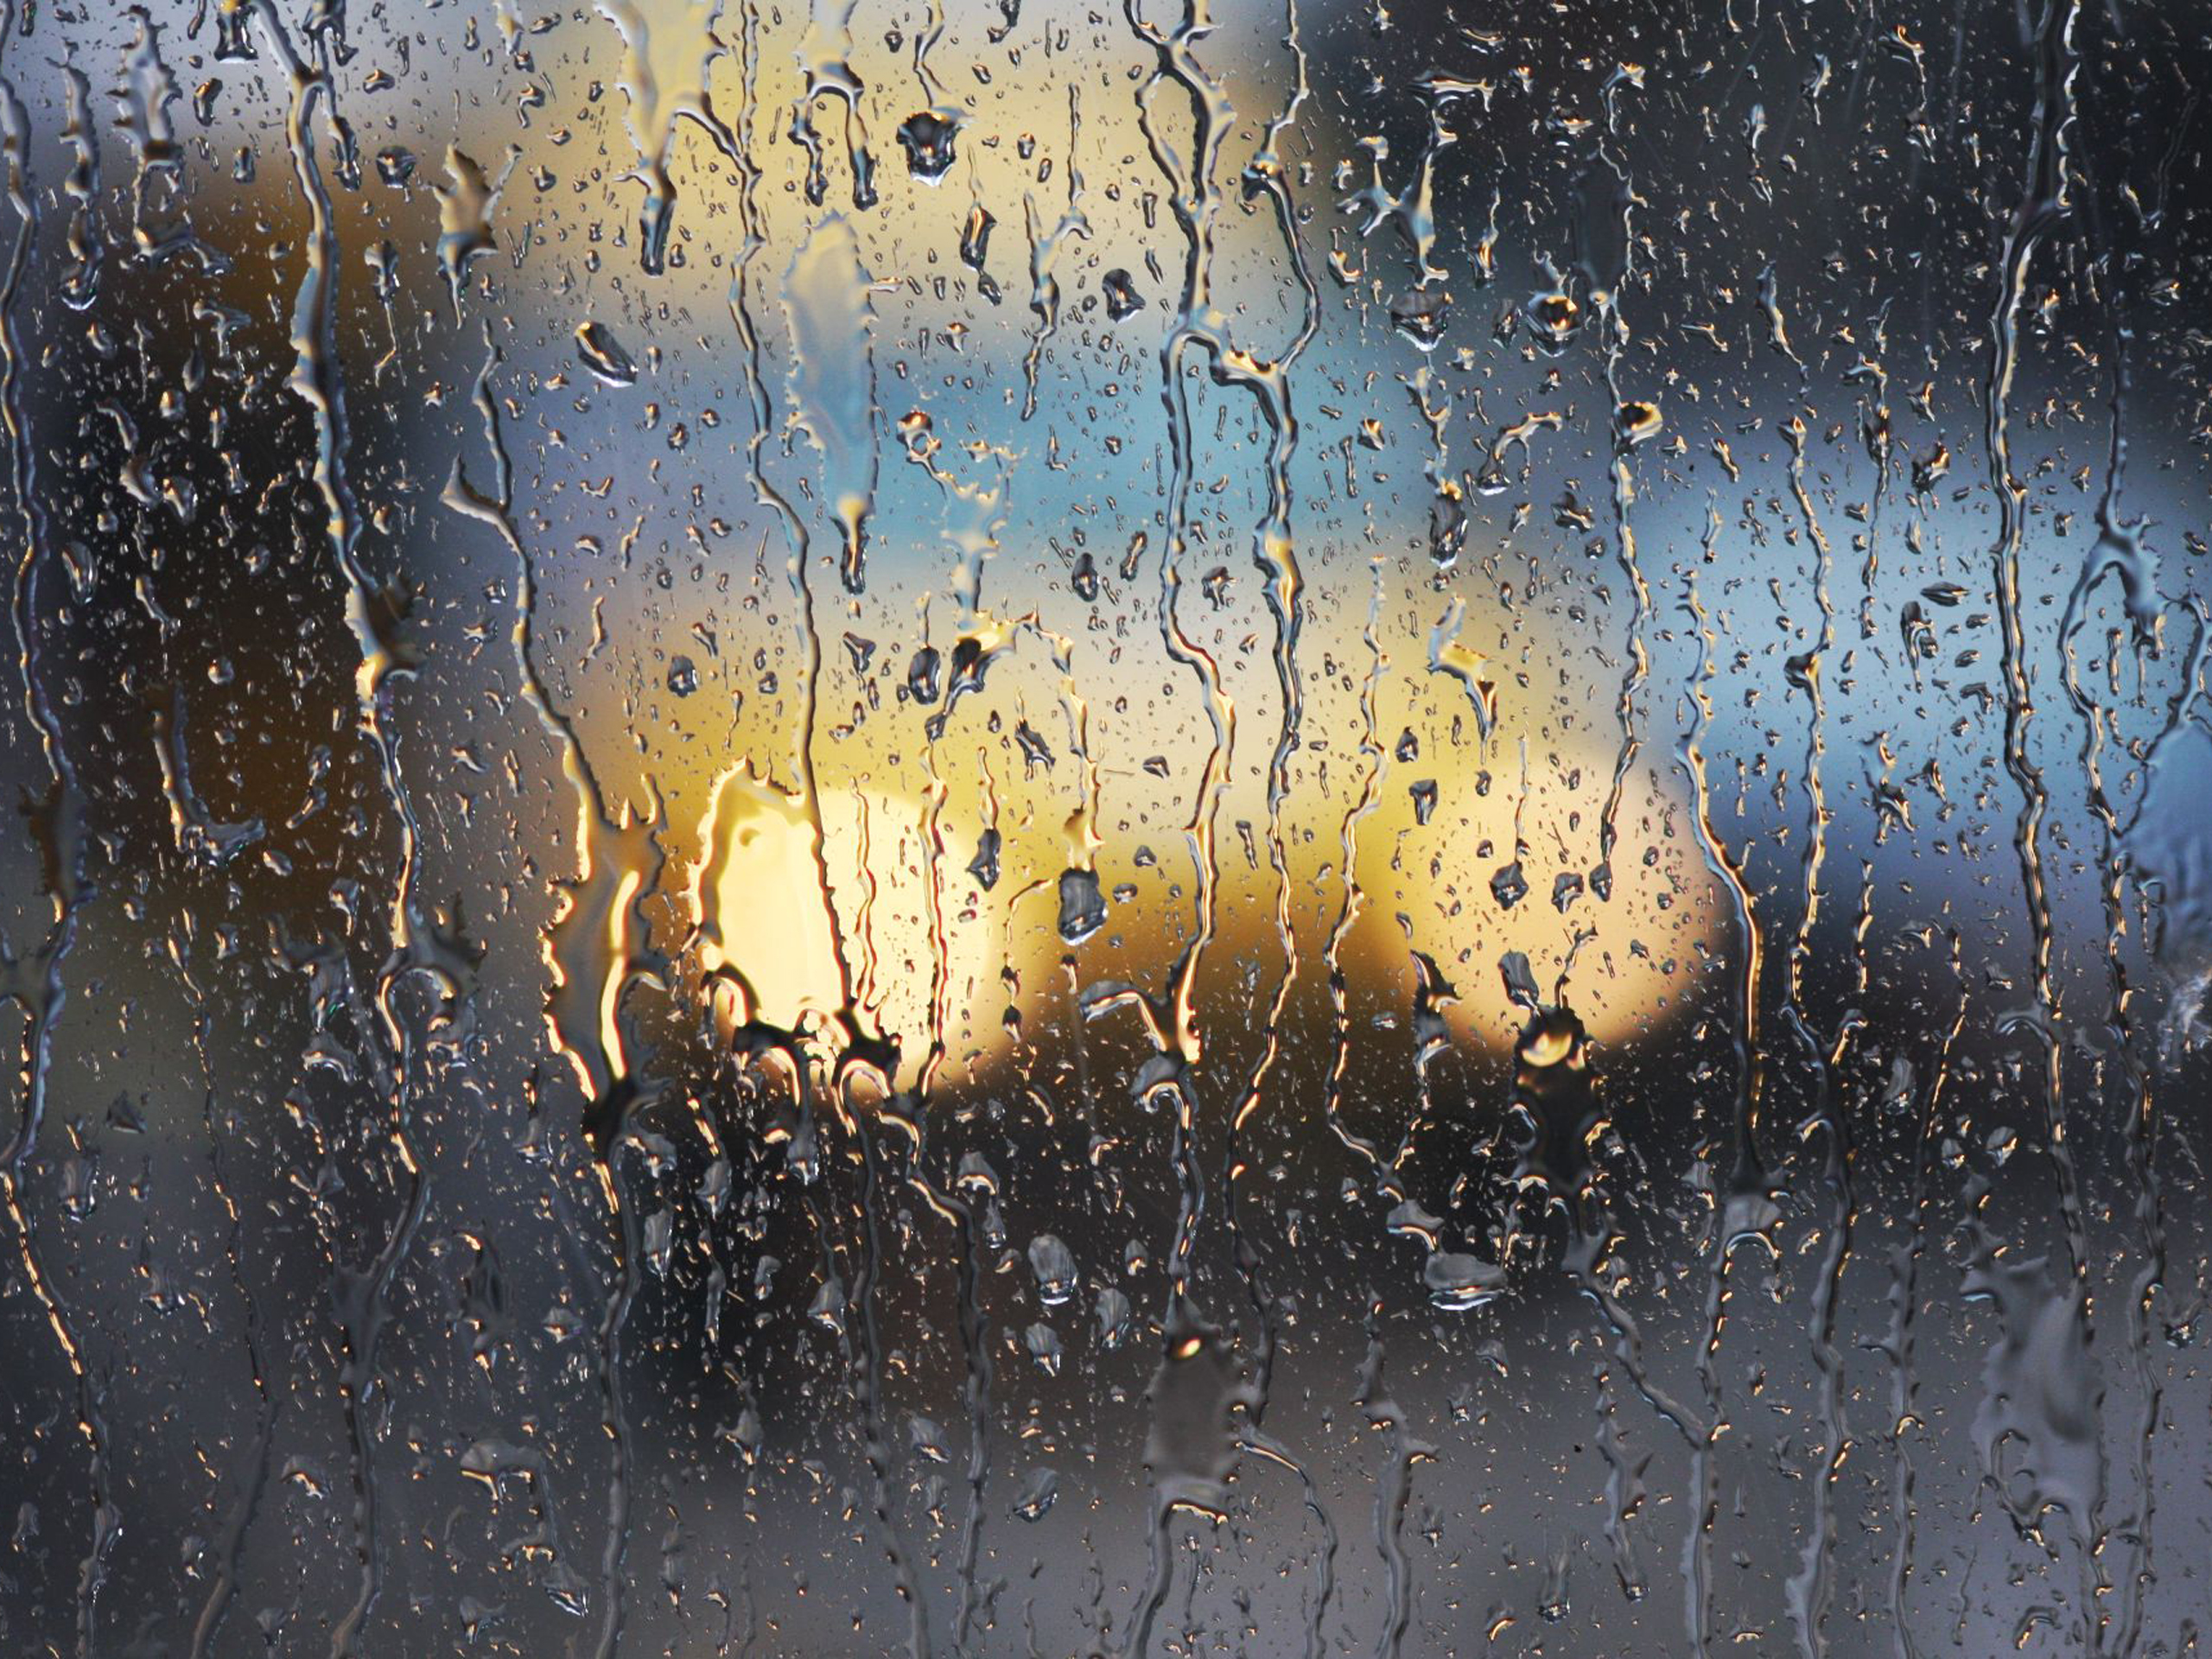 Тема дождливая погода. Капли на стекле. Капли дождя на стекле. Дождевые капли на стекле. Обои дождь.